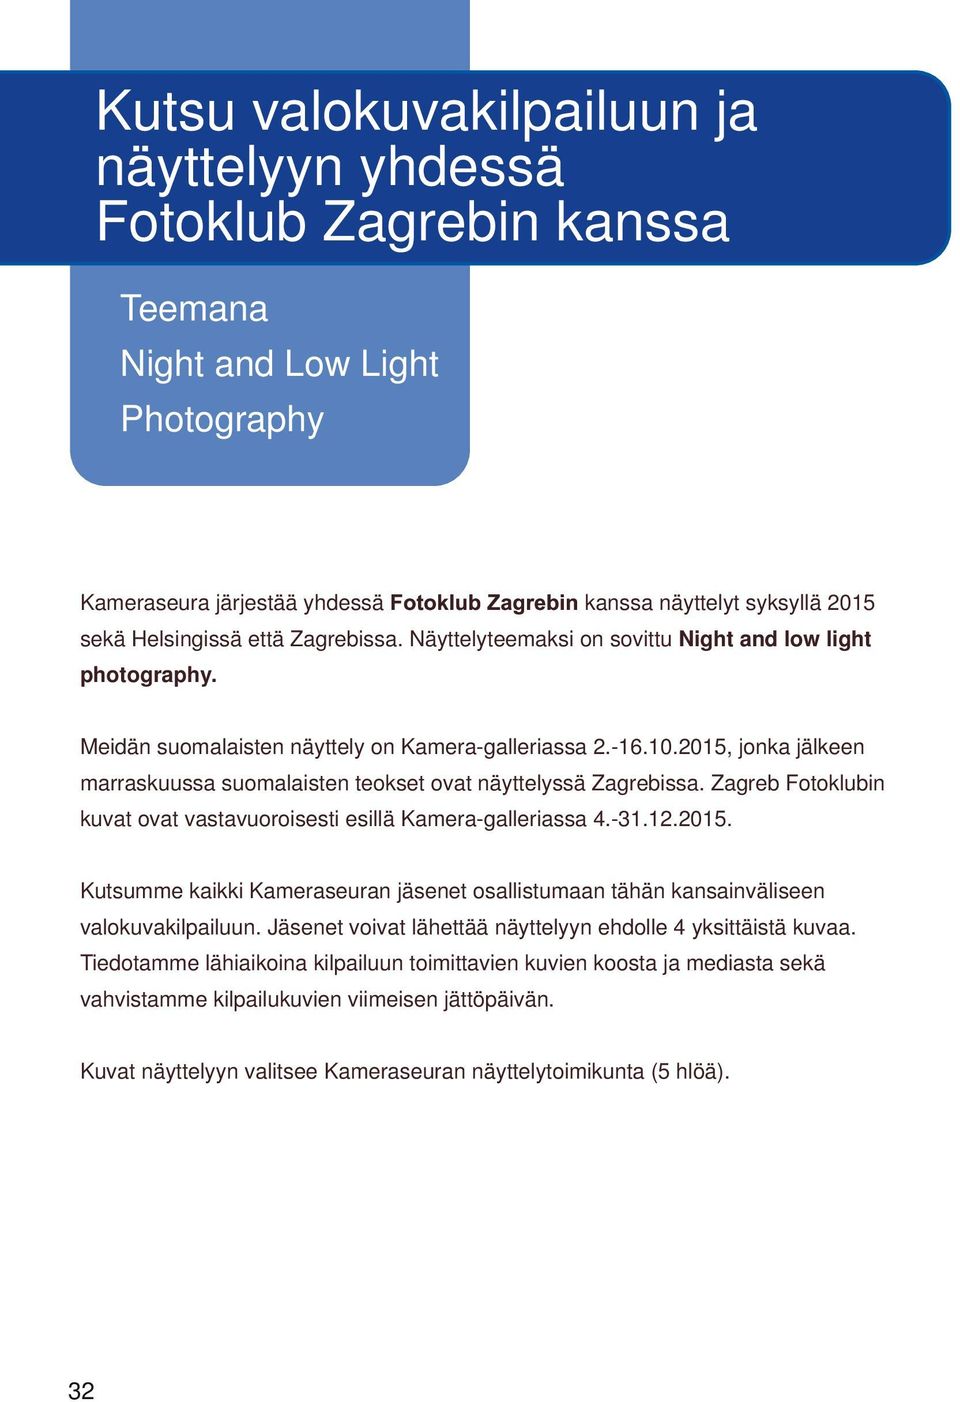 2015, jonka jälkeen marraskuussa suomalaisten teokset ovat näyttelyssä Zagrebissa. Zagreb Fotoklubin kuvat ovat vastavuoroisesti esillä Kamera galleriassa 4. 31.12.2015. Kutsumme kaikki Kameraseuran jäsenet osallistumaan tähän kansainväliseen valokuvakilpailuun.